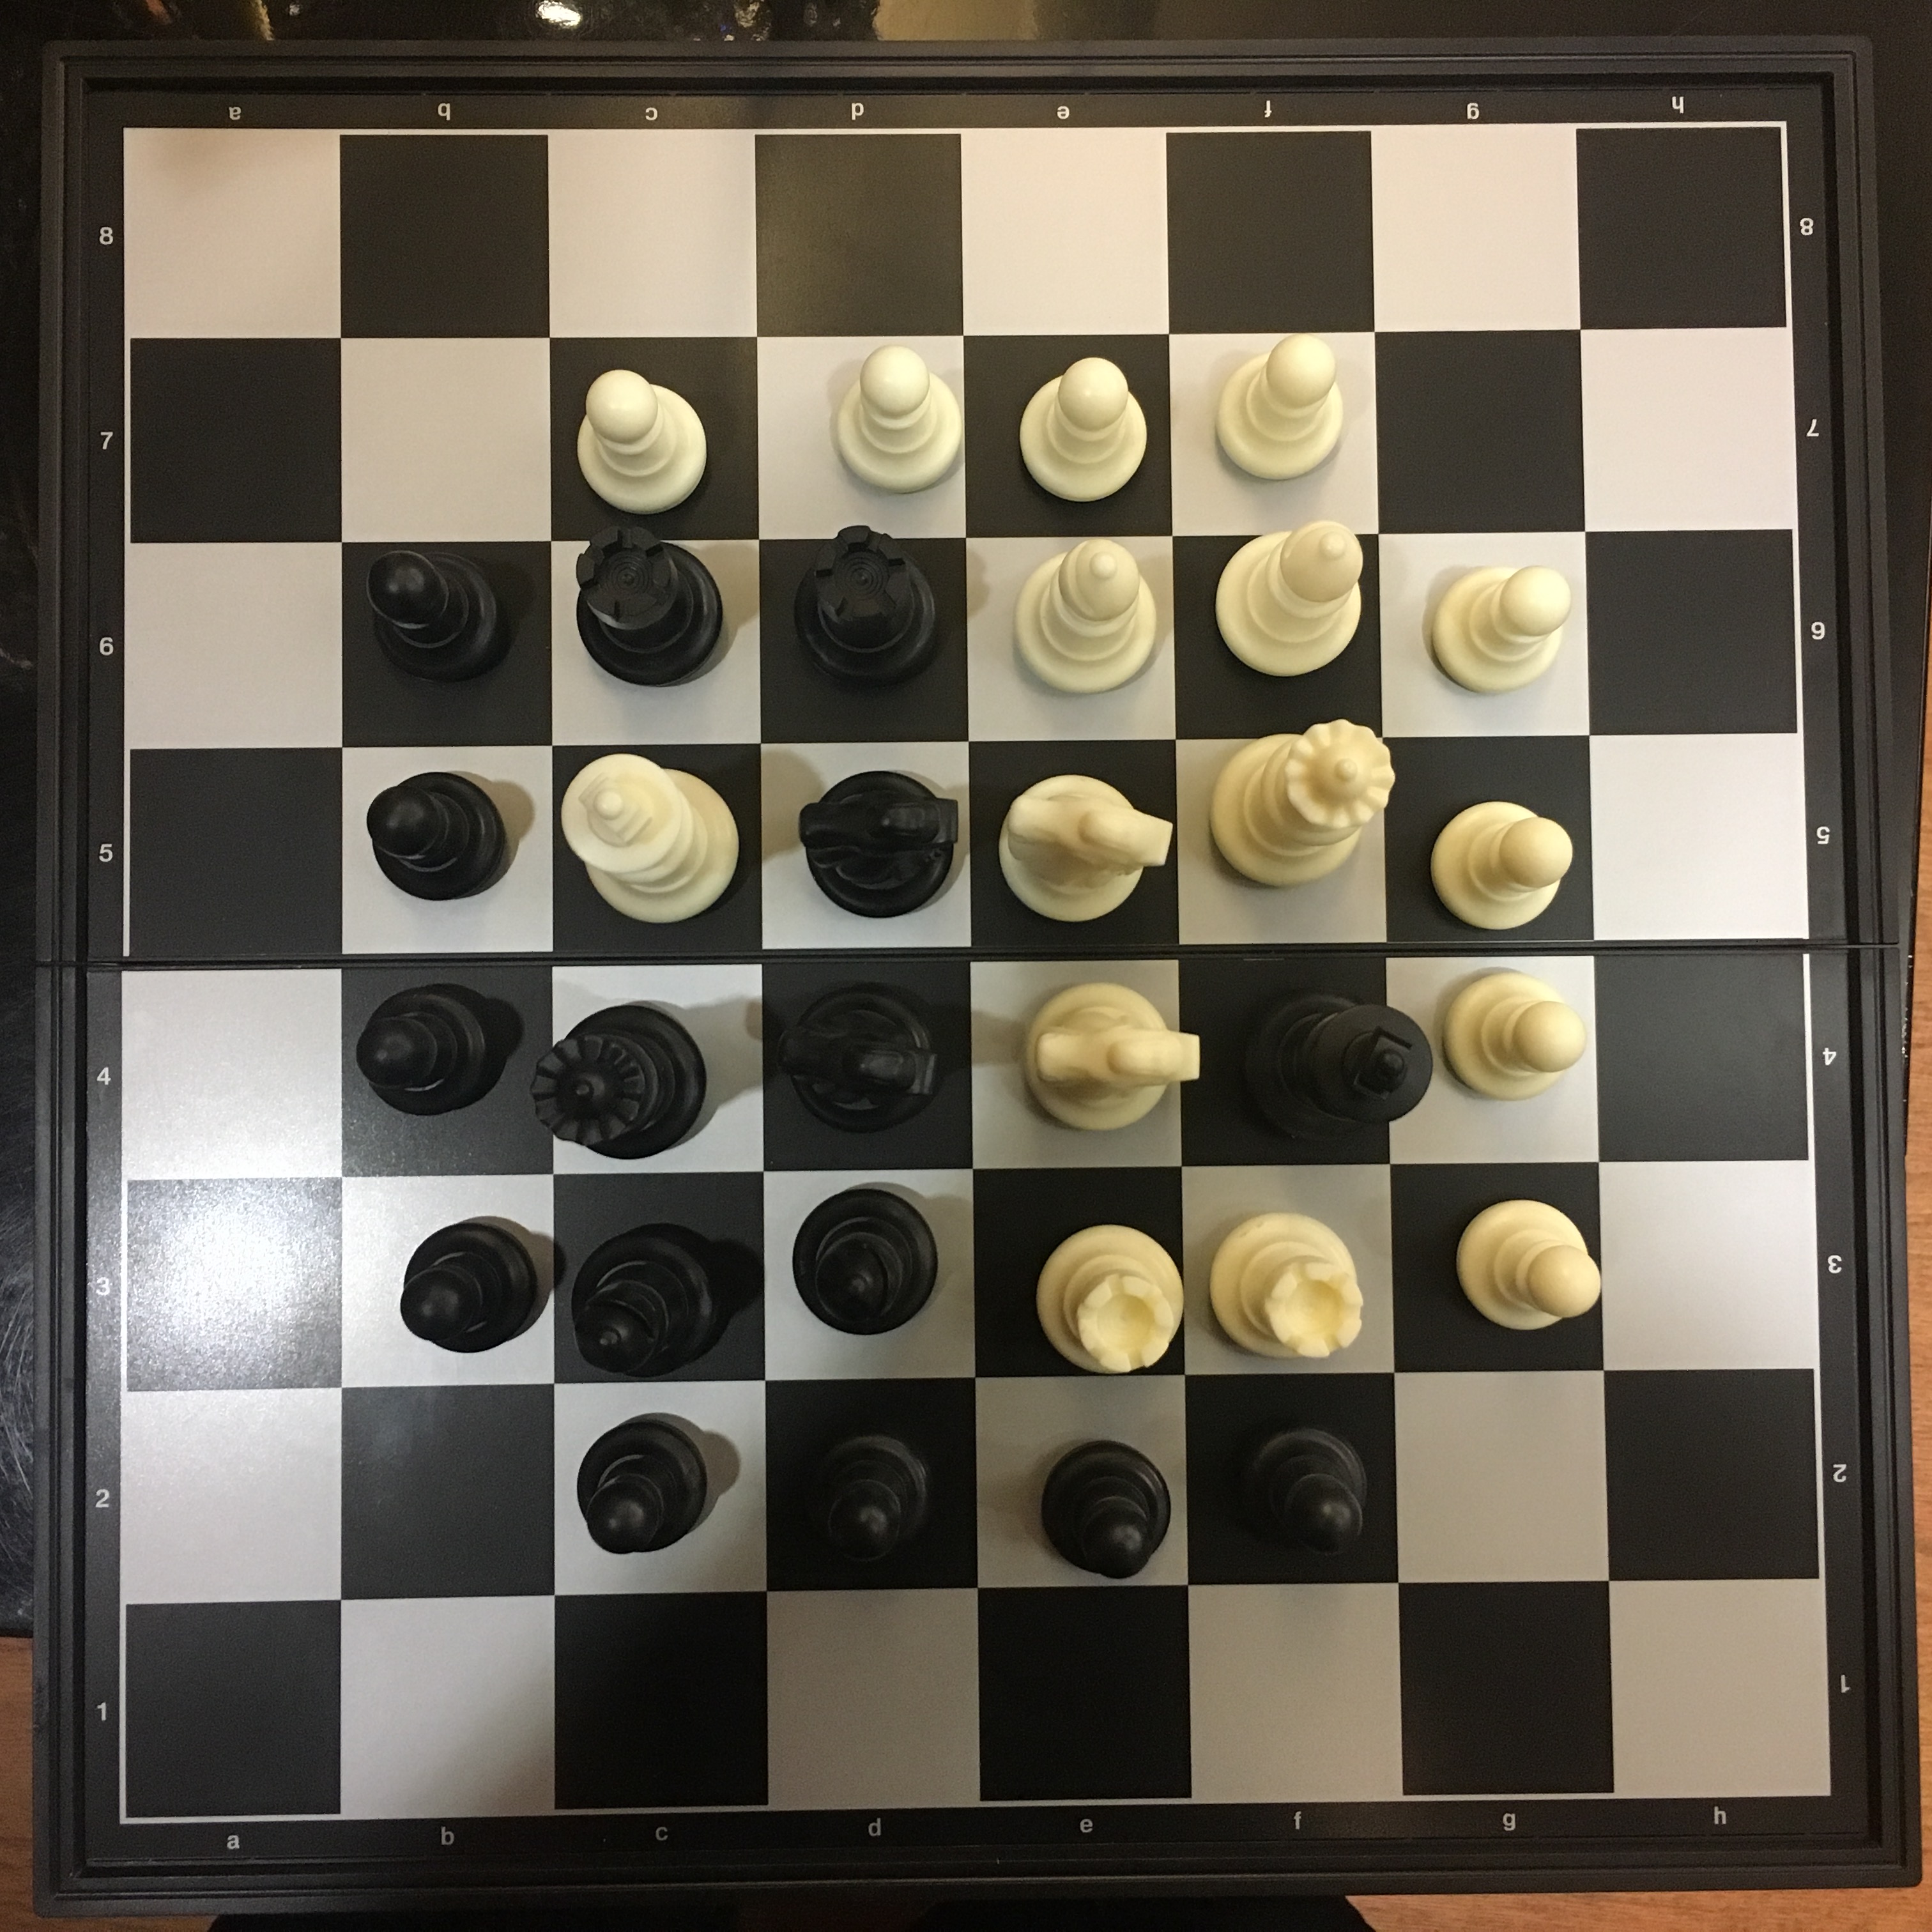 国际象棋小课堂:和棋的规则